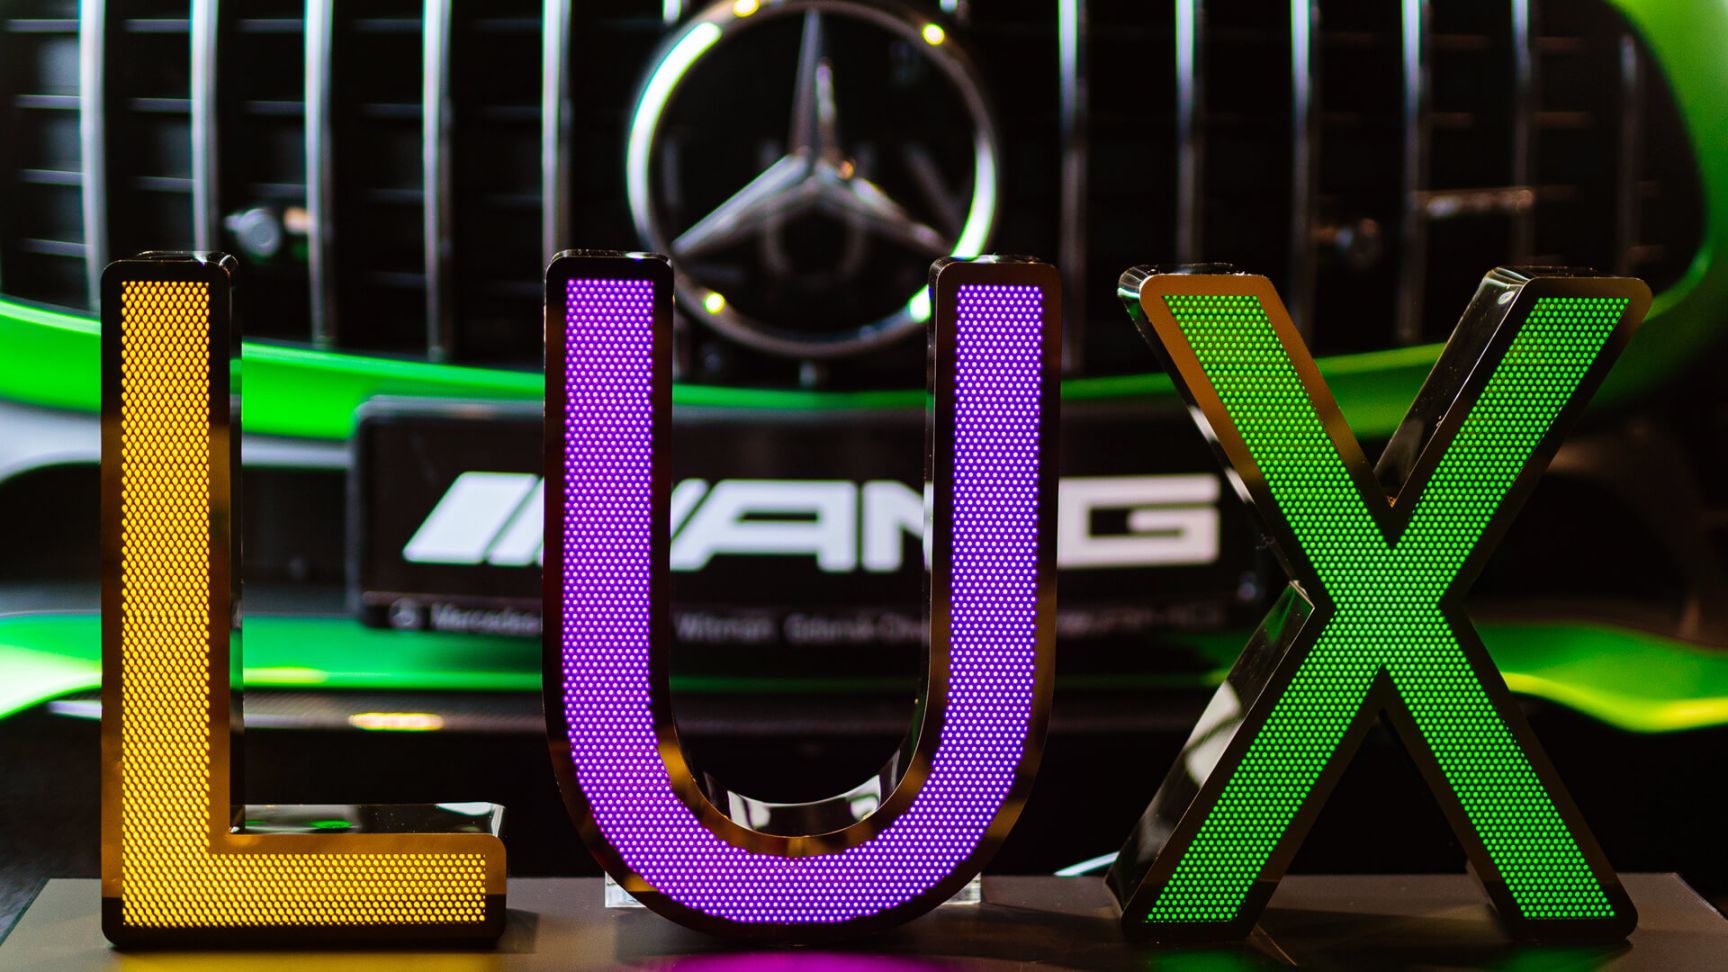 Letras de acero inoxidable perforadas LUX - Letras LUX de acero inoxidable perforado, iluminadas con LED en tres colores, sobre fondo Mercedes